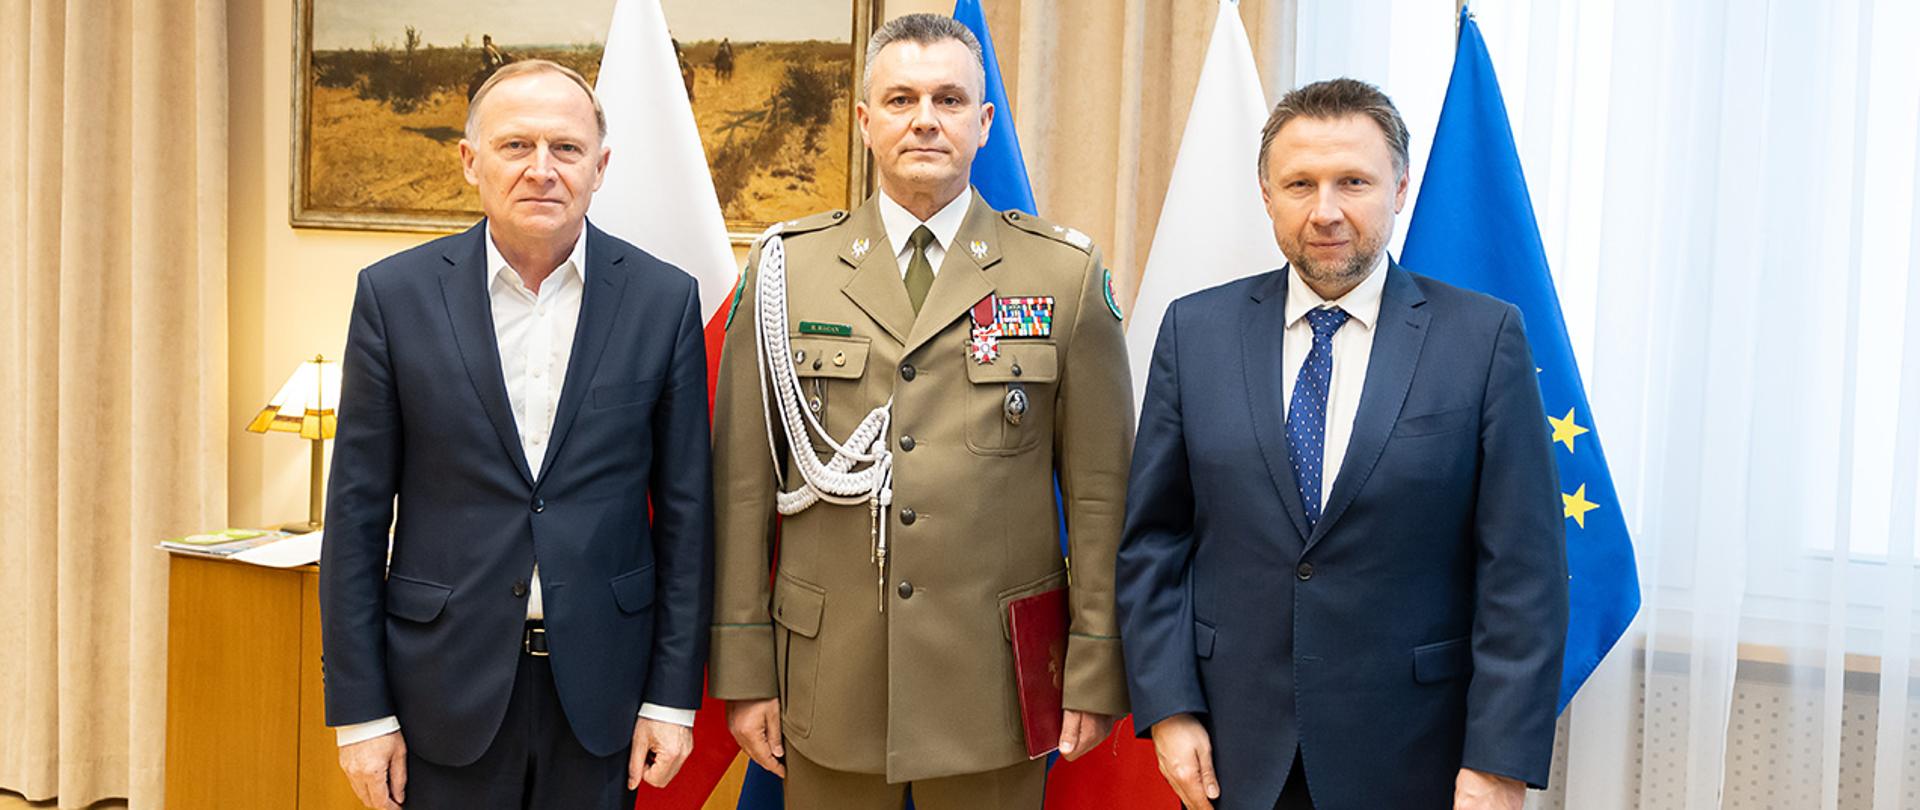 Na zdjęciu minister Marcin Kierwiński, sekretarz stanu Czesław Mroczek i gen. bryg. SG Robert Bagan